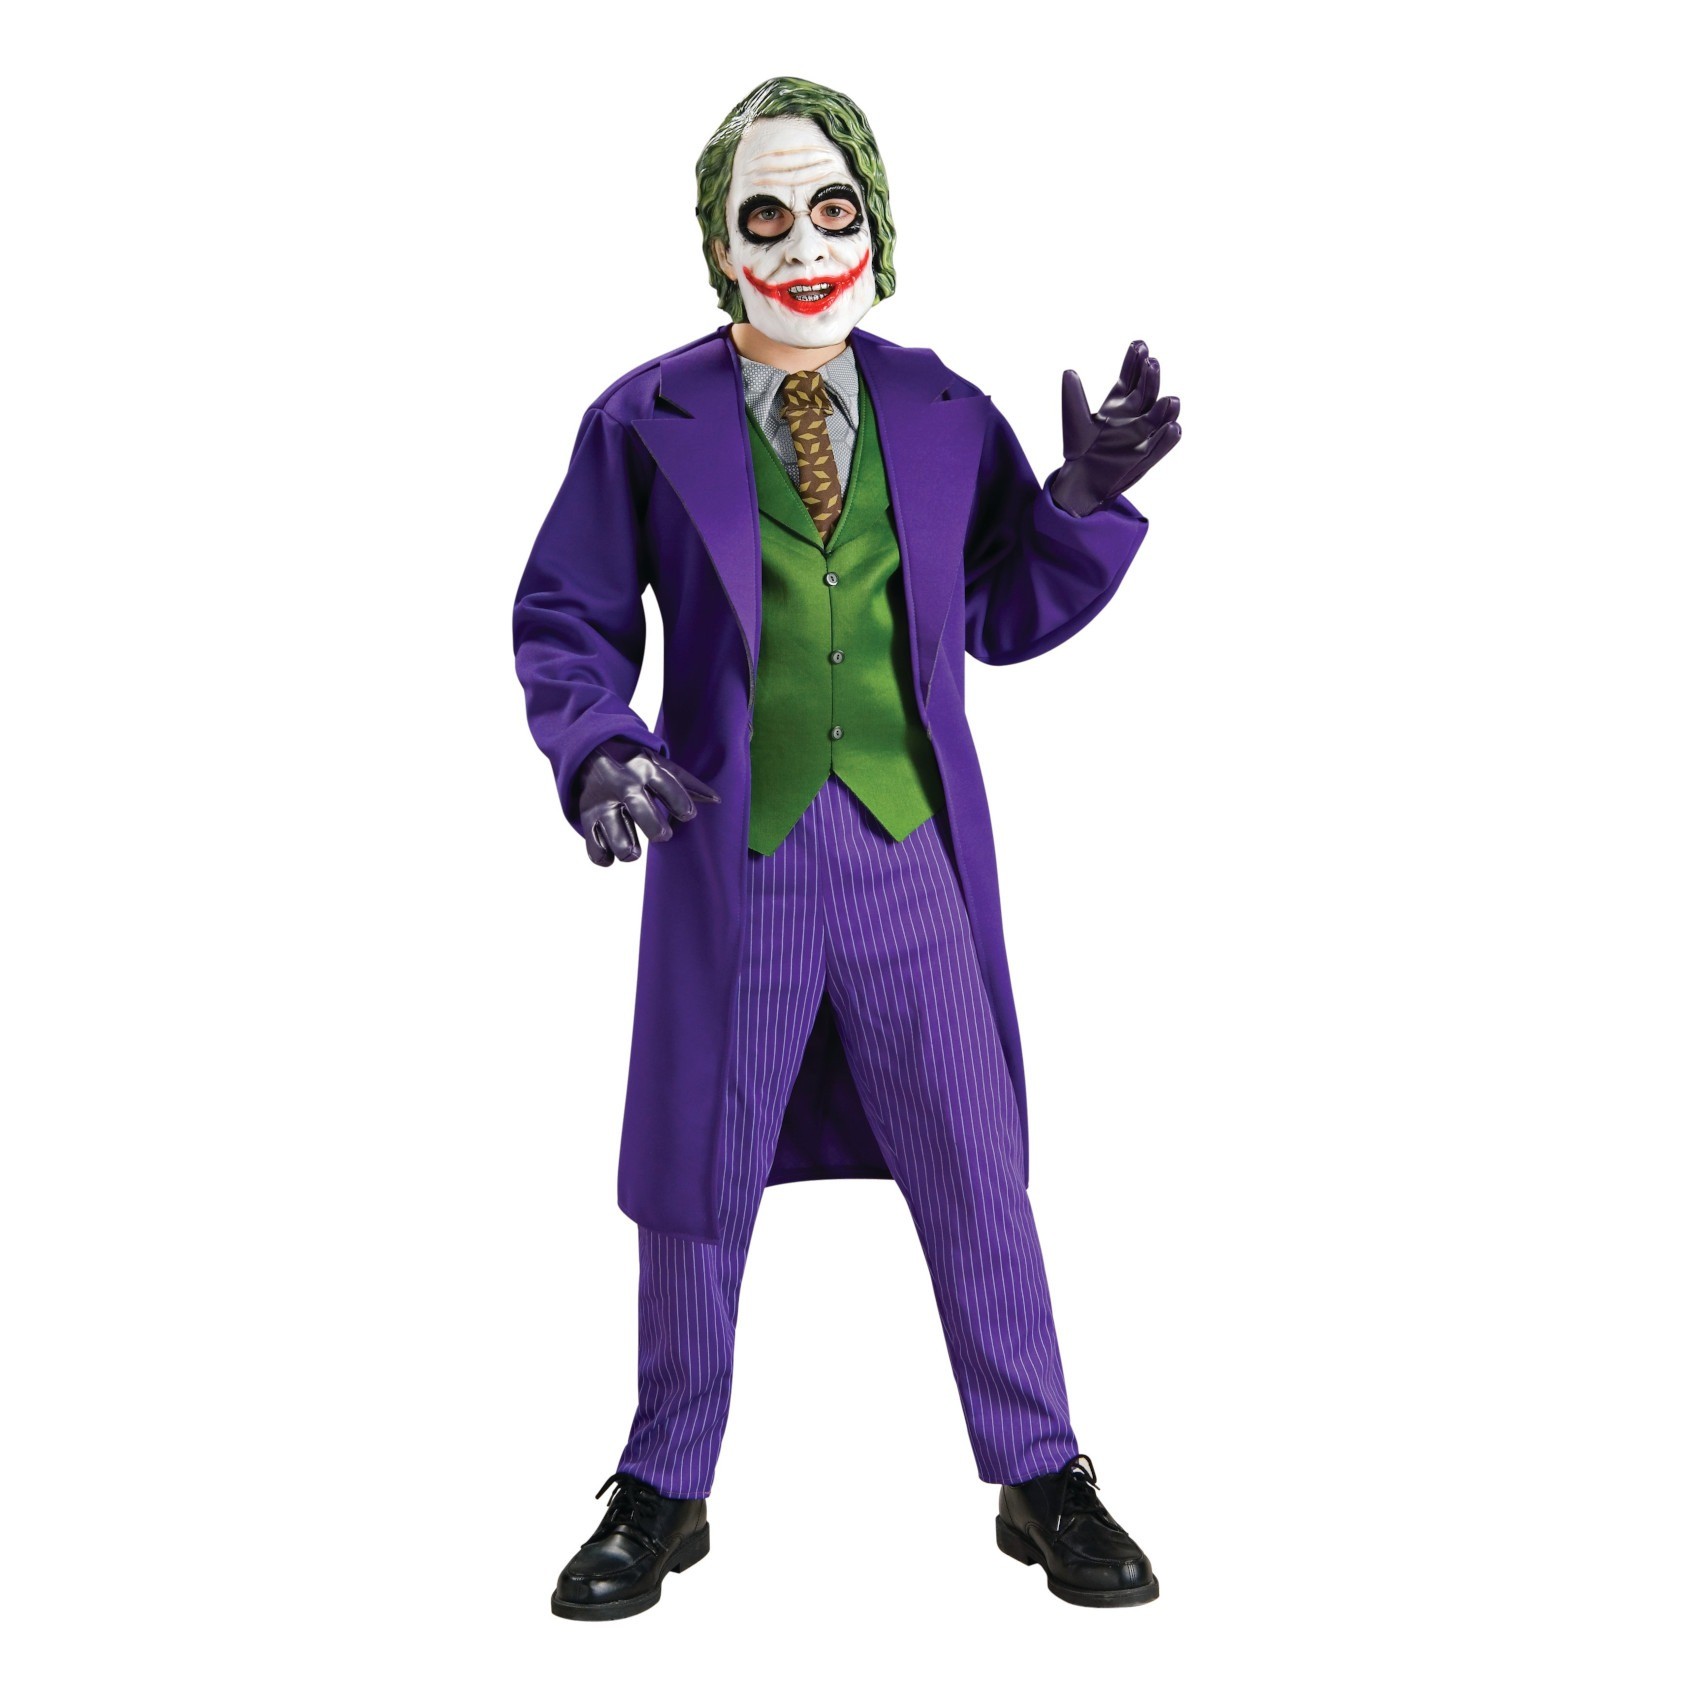 Costume Joker Bambino - Divertimento Malizioso per Piccoli